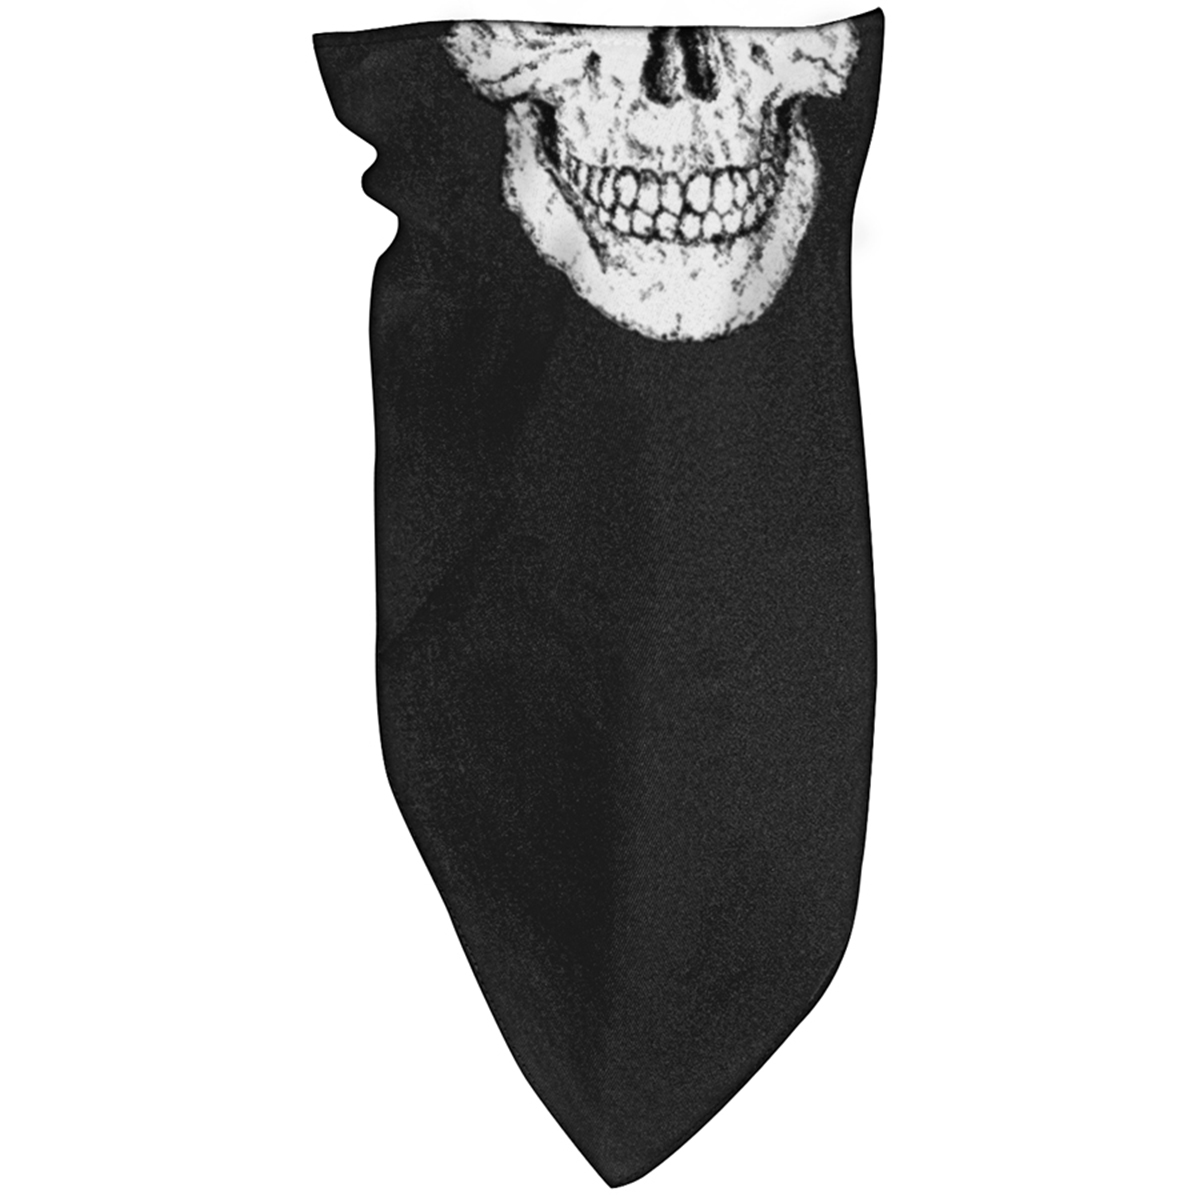 Zan Headgear 3-in-1 Fleece Lined Bandana - Skull - image 1 of 3